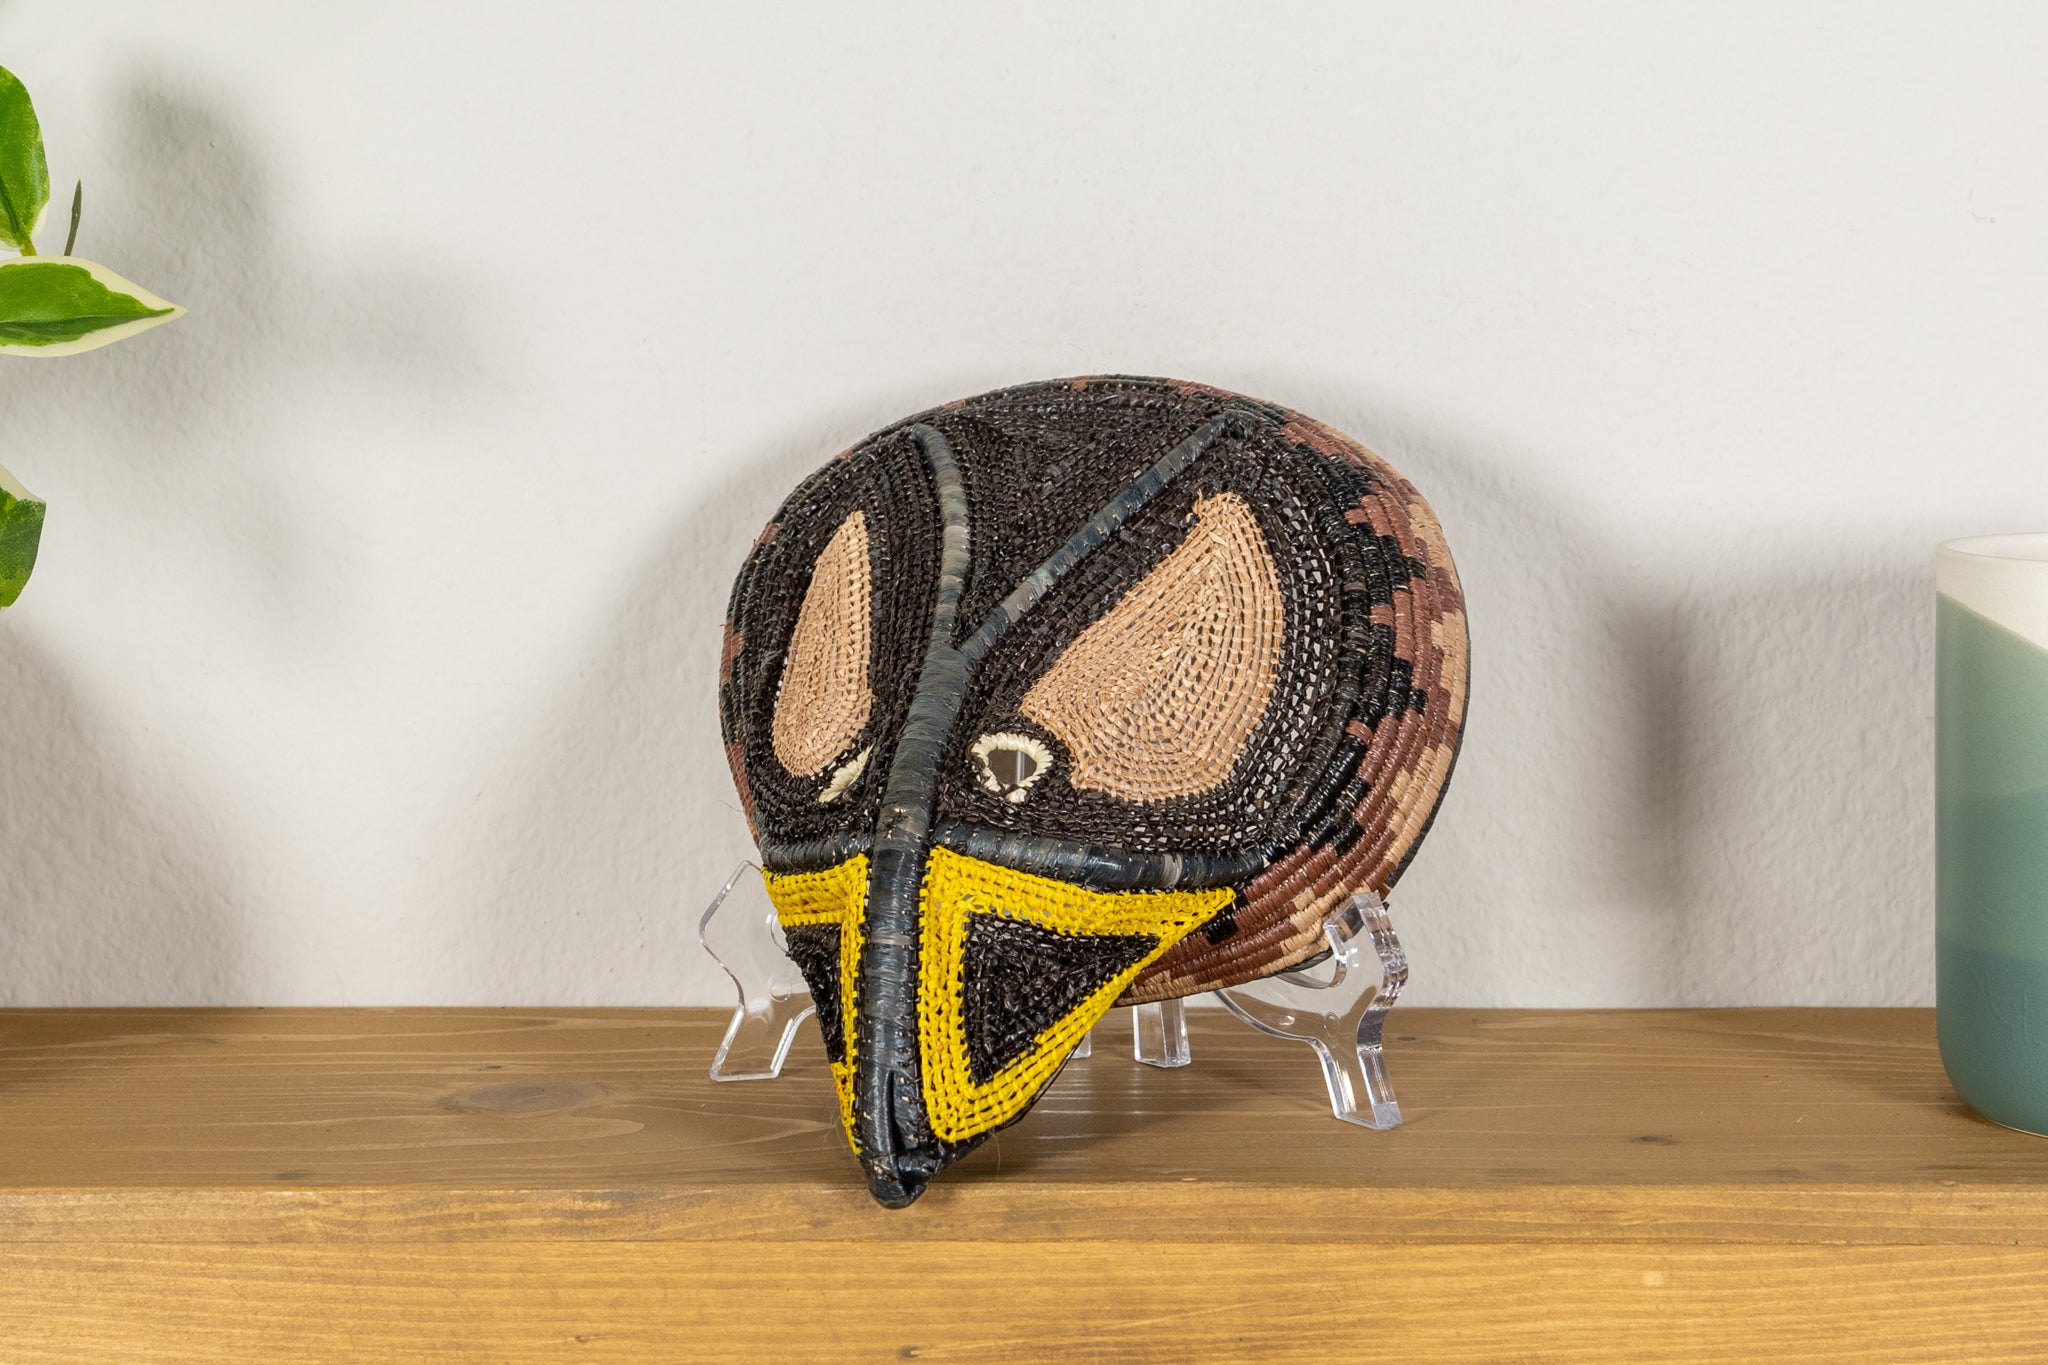 Osprey Hawk Mask